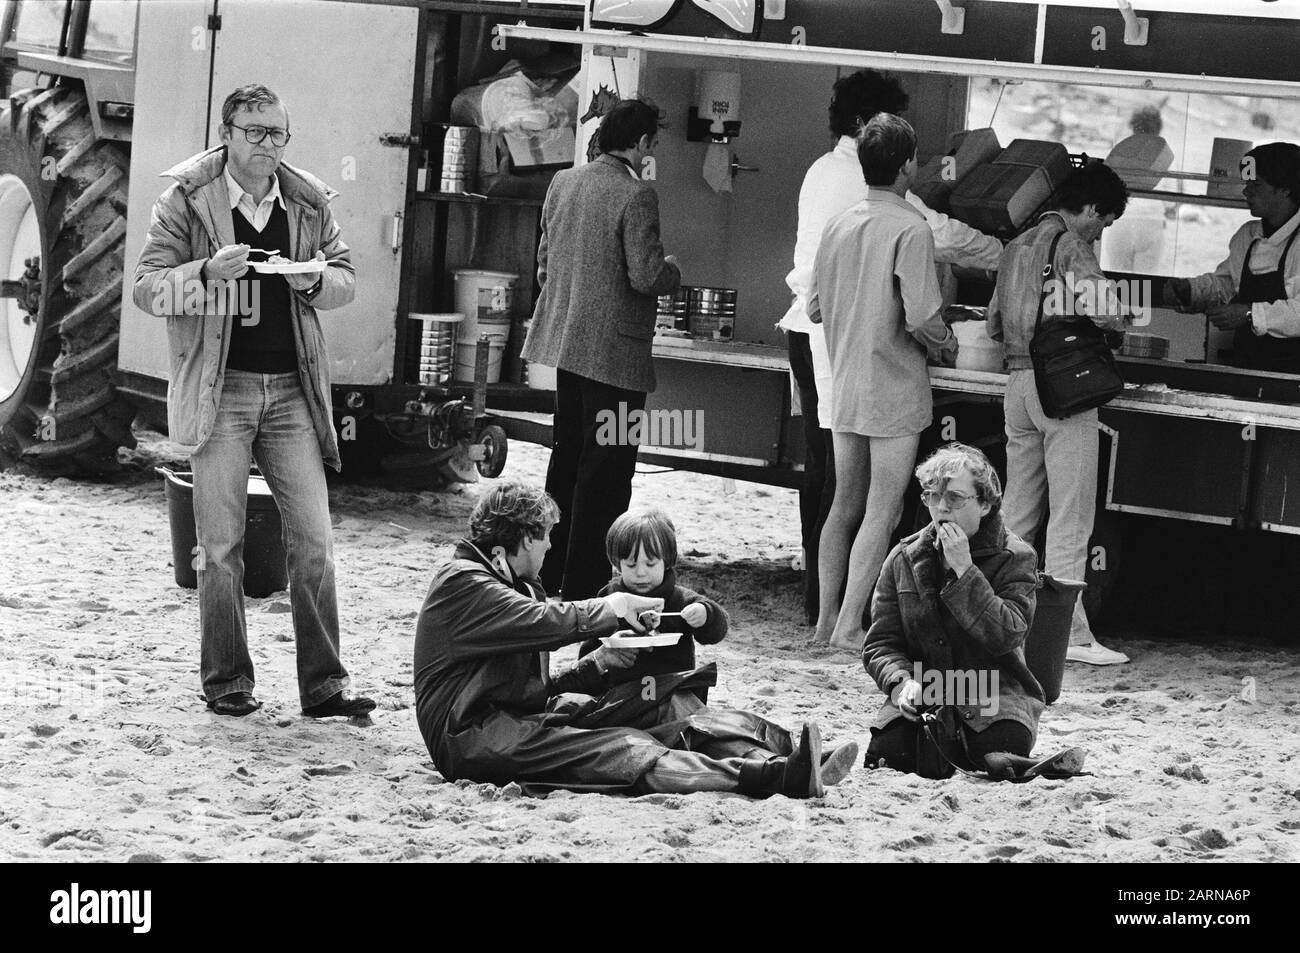 Pentecôte à Zandvoort Poissonnière à la plage Date : 23 mai 1983 lieu : Noord-Holland, Zandvoort mots clés : stations balnéaires, vacances, plages Banque D'Images